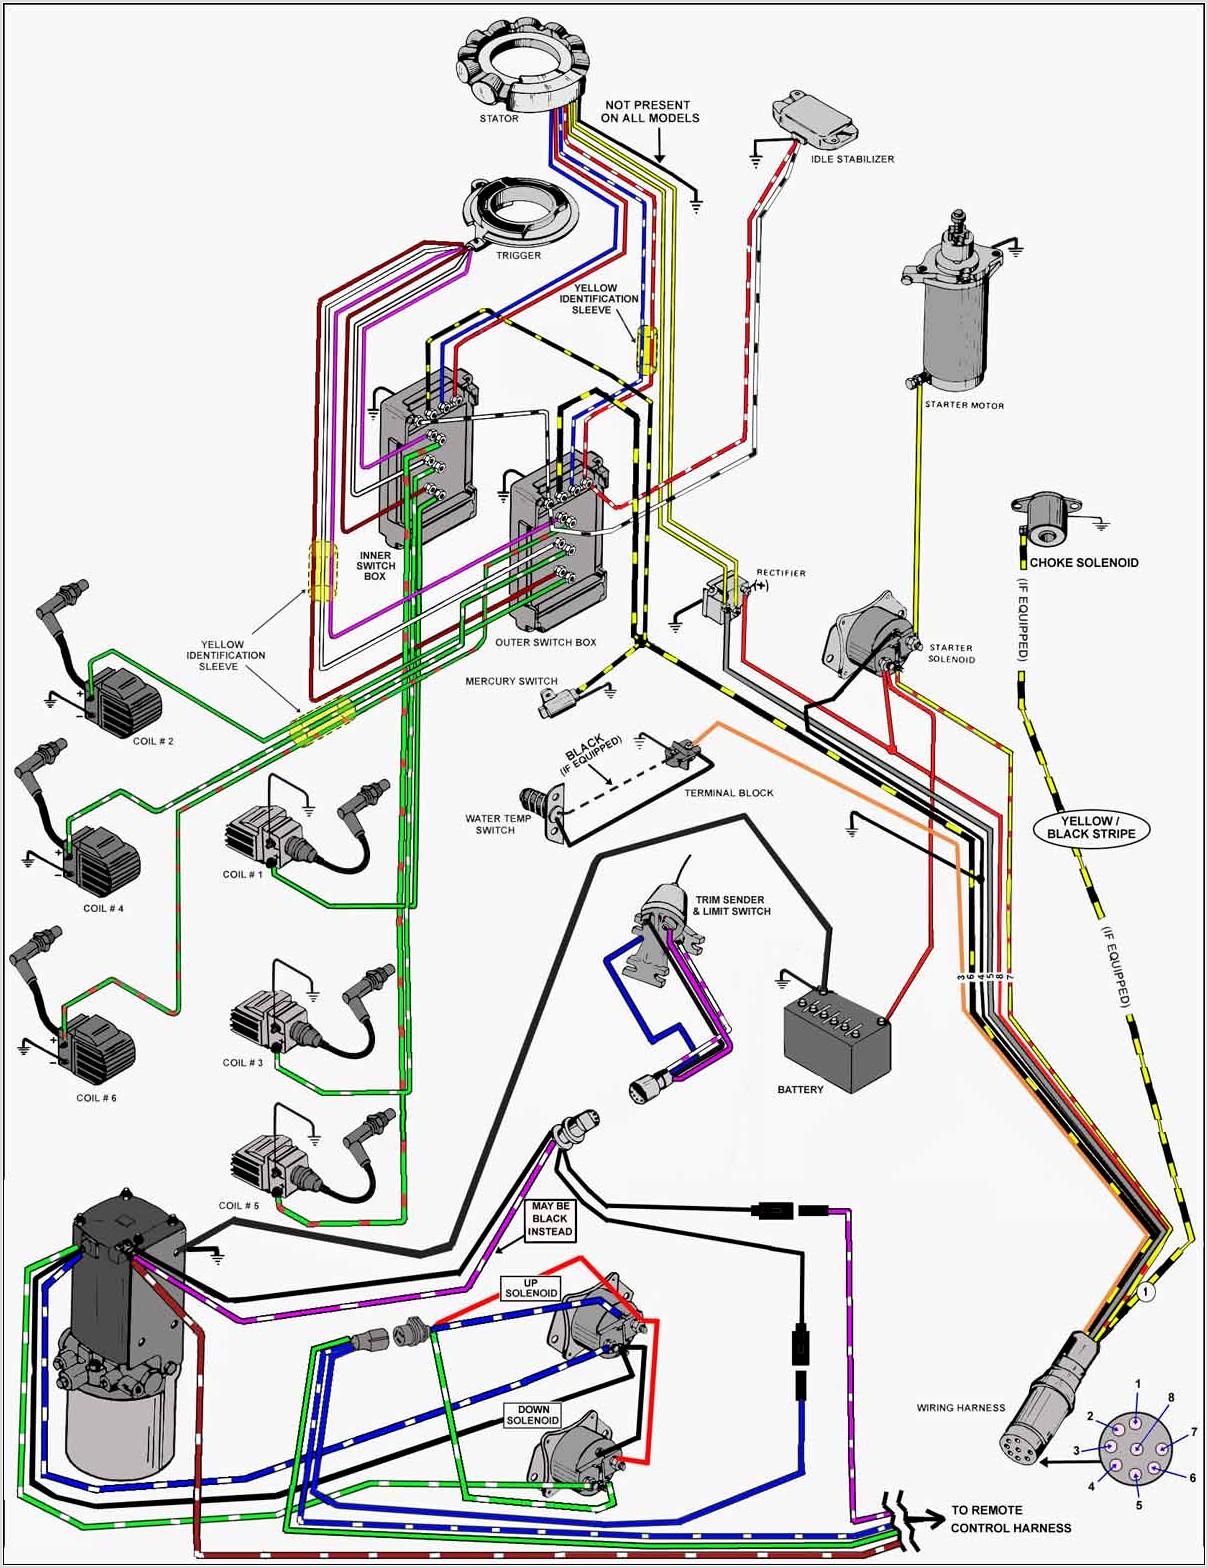 Mercury Control Box Wiring Diagram